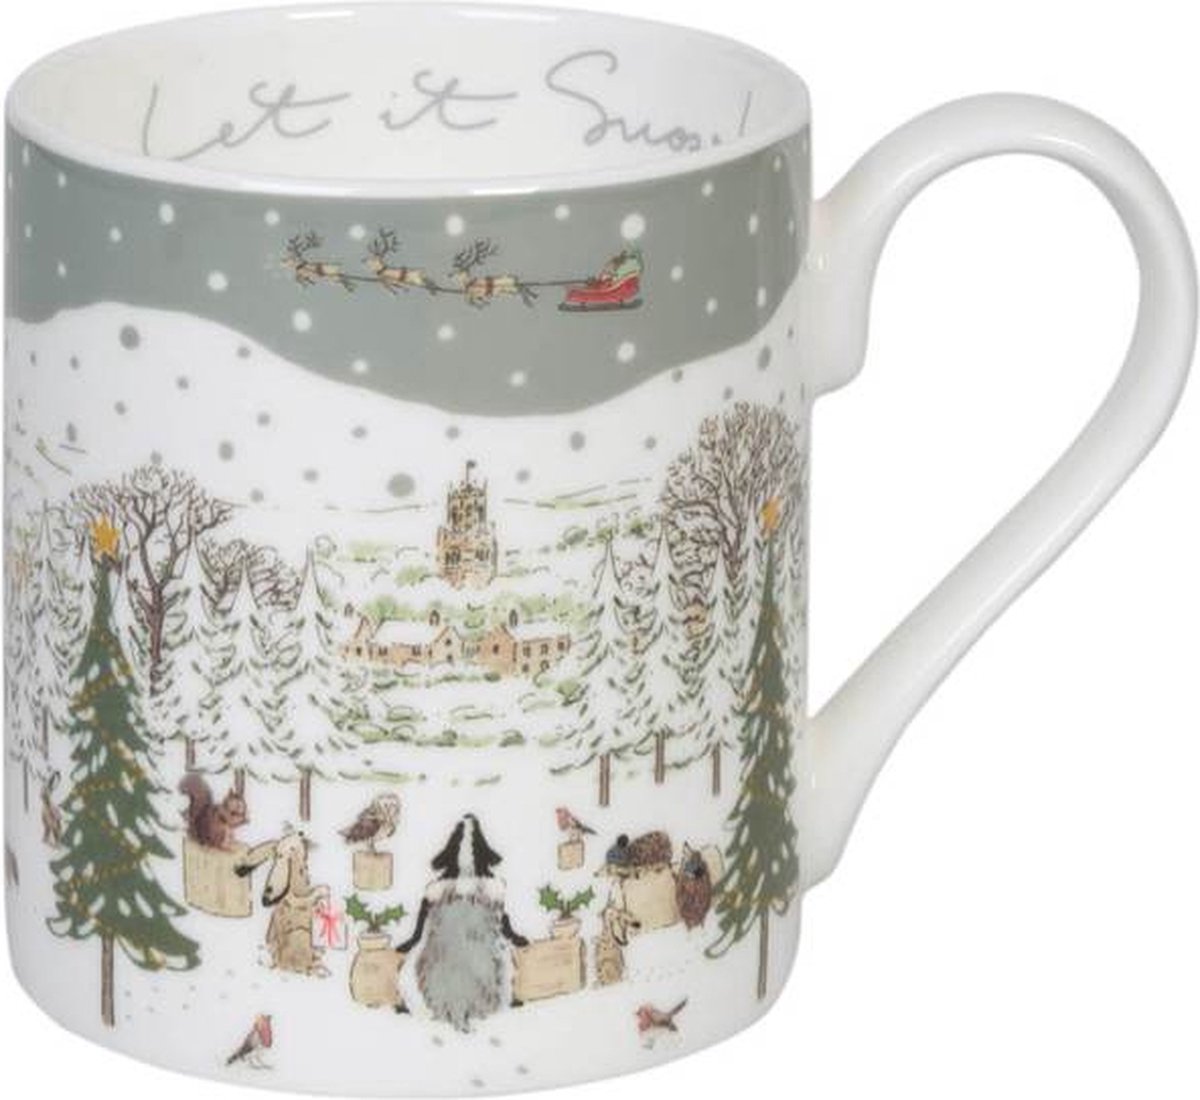 Feestelijk Bos Mok van Sophie Allport - Kerstbeker met bosdieren in de sneeuw - kopje voor koffie of thee - Kerstkopje - Kerstbeker - Kerstmok